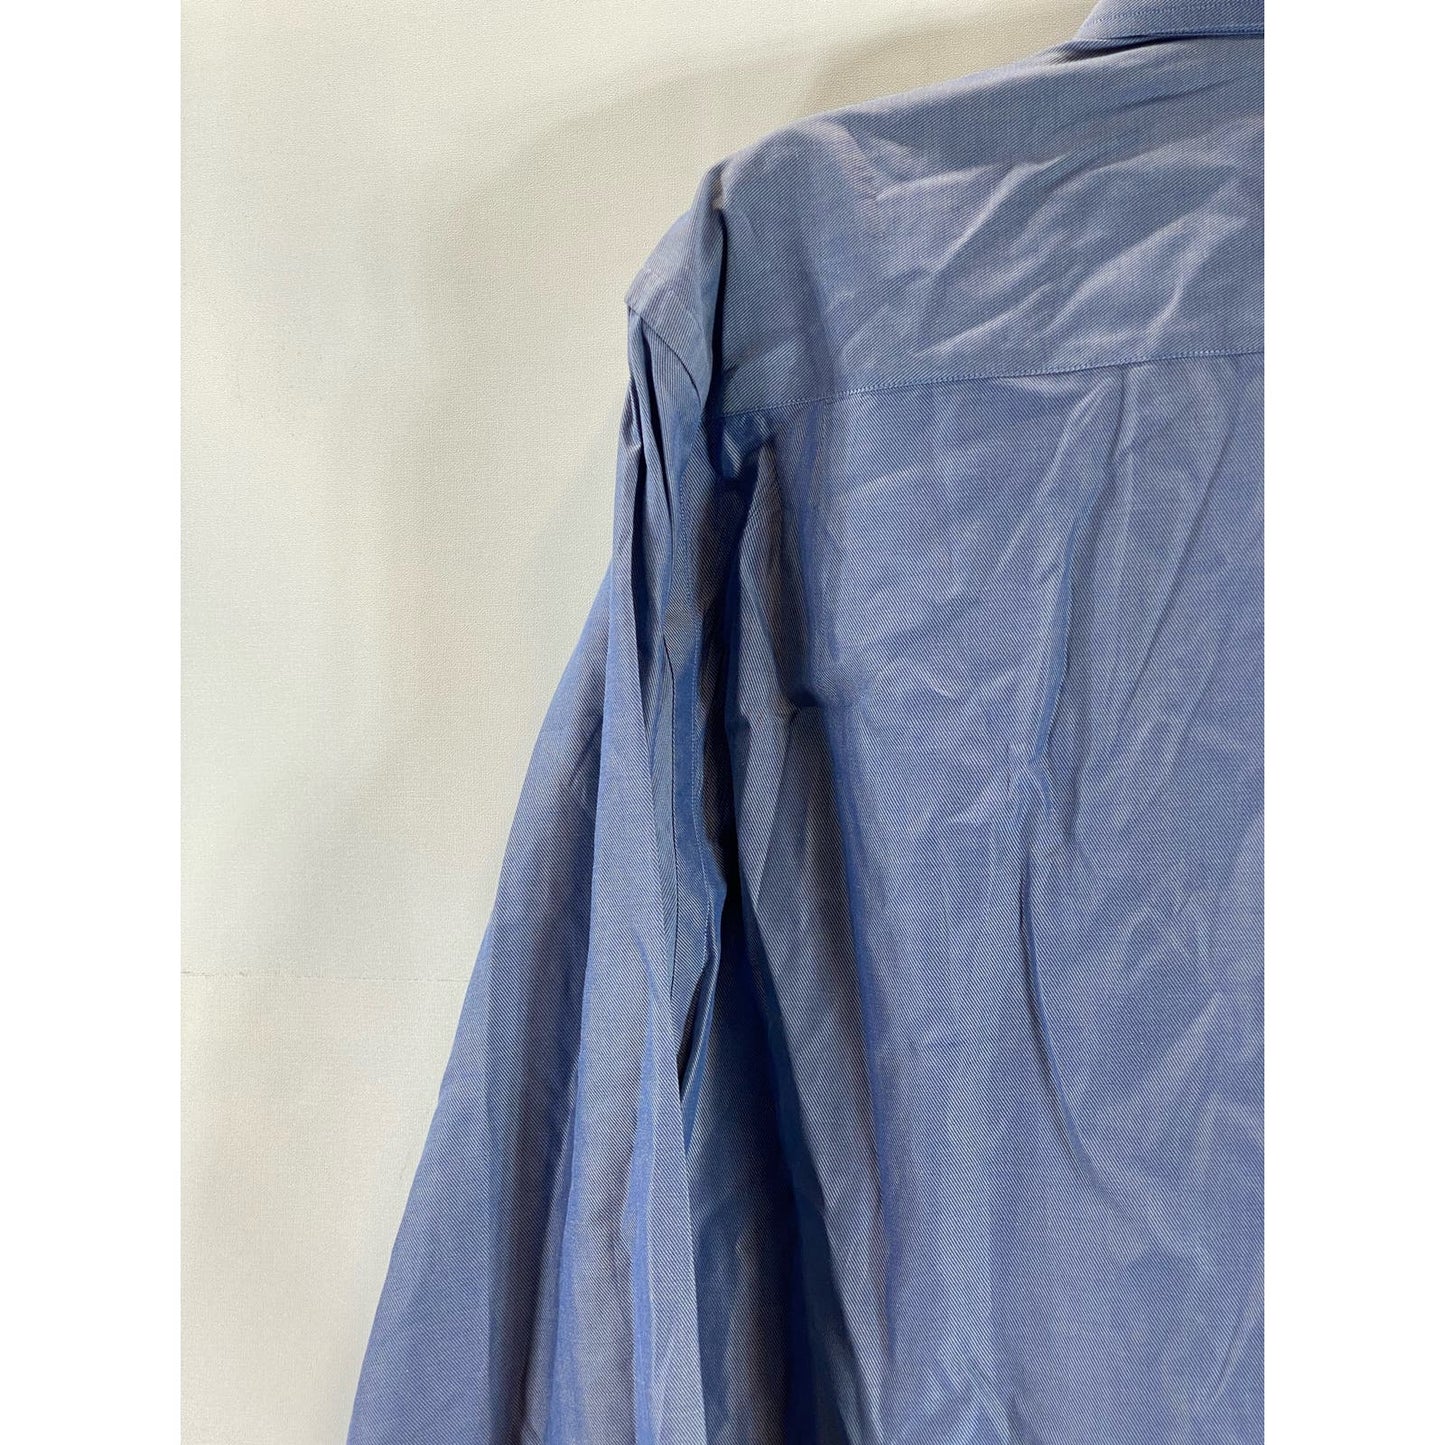 BRIONI FOR NEIMAN MARCUS Men's Blue Button-Up Long Sleeve Shirt SZ S